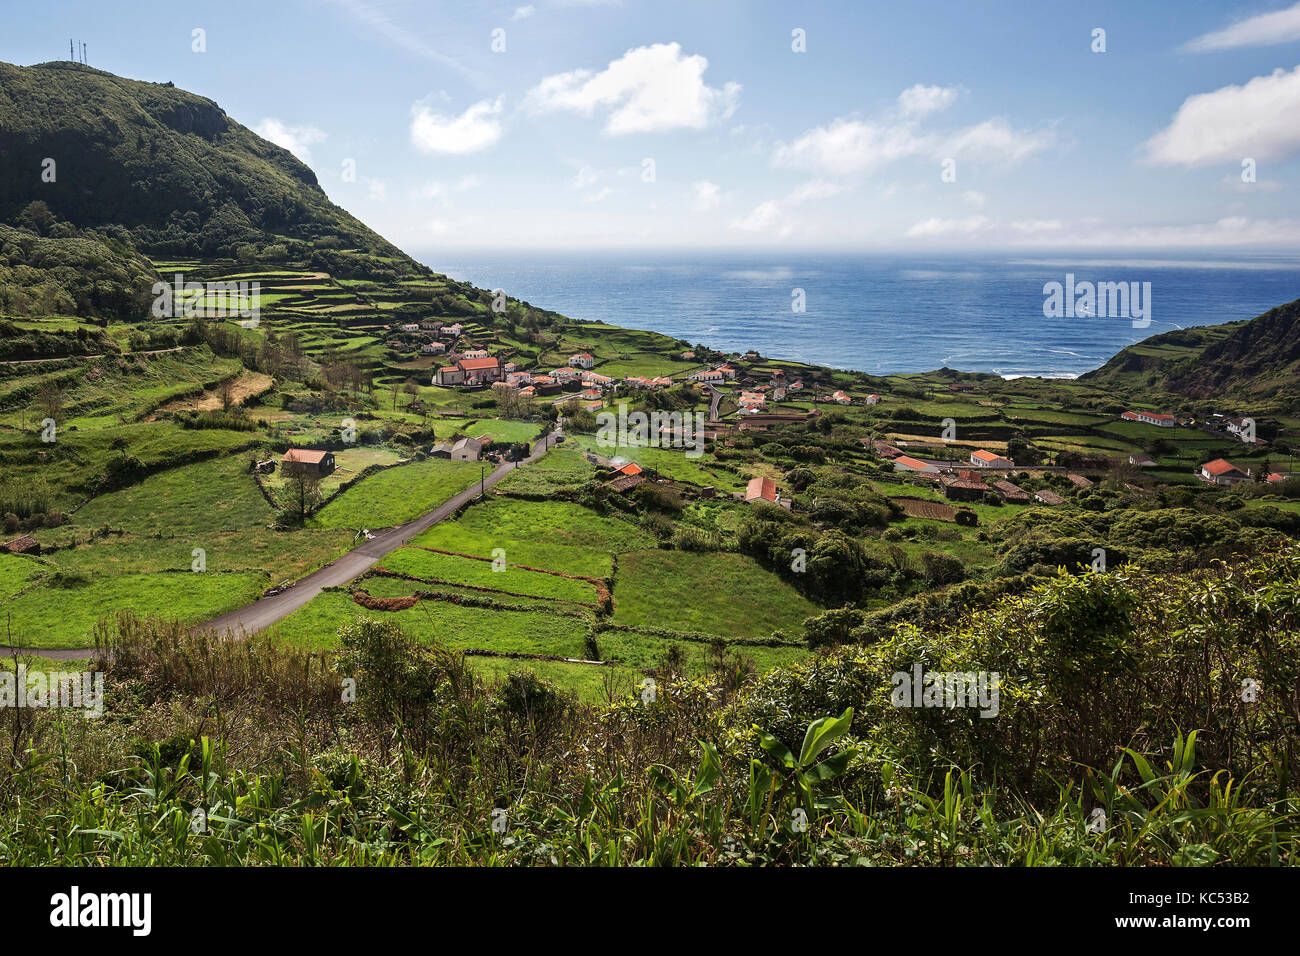 Vista de fajazinha, costa oeste, isla de flores, Azores, Portugal Foto de stock